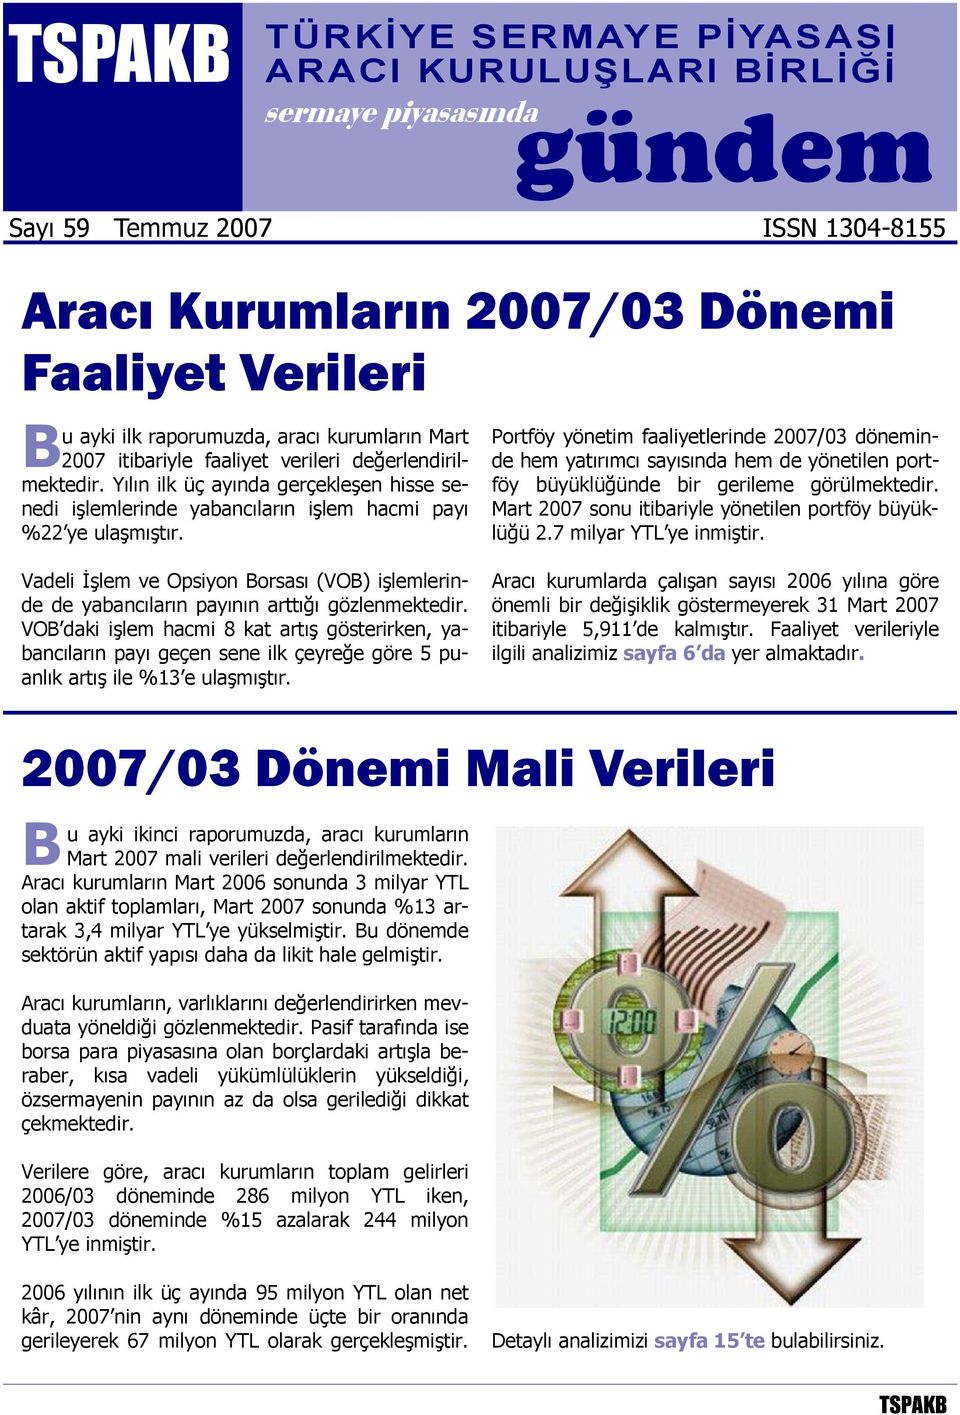 Portföy yönetim faaliyetlerinde 2007/03 döneminde hem yatırımcı sayısında hem de yönetilen portföy büyüklüğünde bir gerileme görülmektedir. Mart 2007 sonu itibariyle yönetilen portföy büyüklüğü 2.